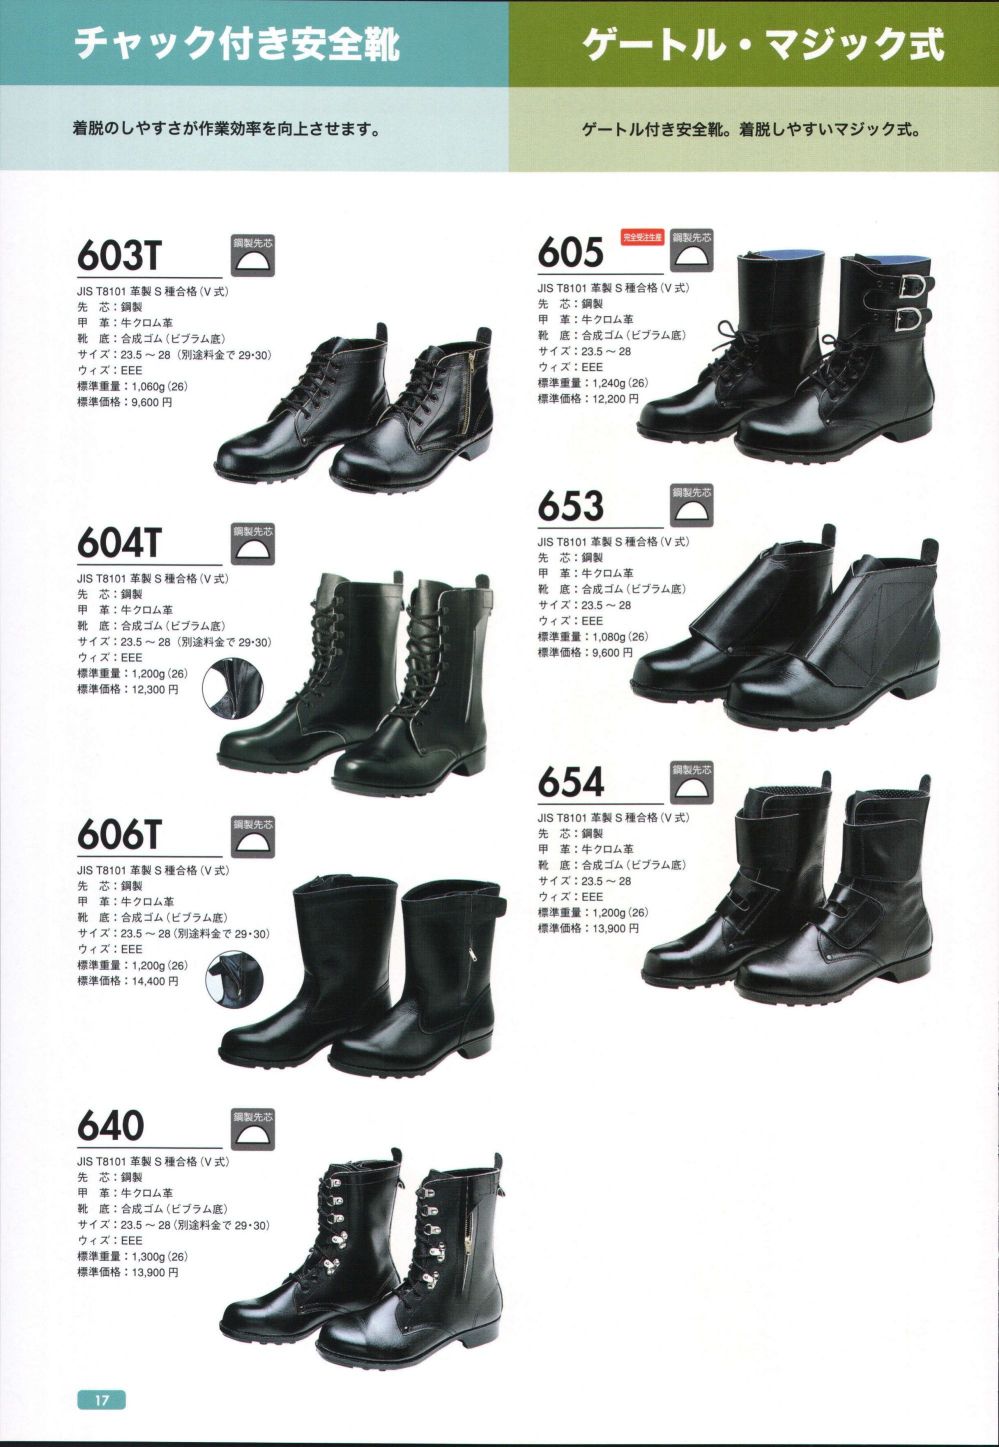 ドンケル 安全靴 半長靴 チャック付 JIS T8101革製S種合格(V式) 606T